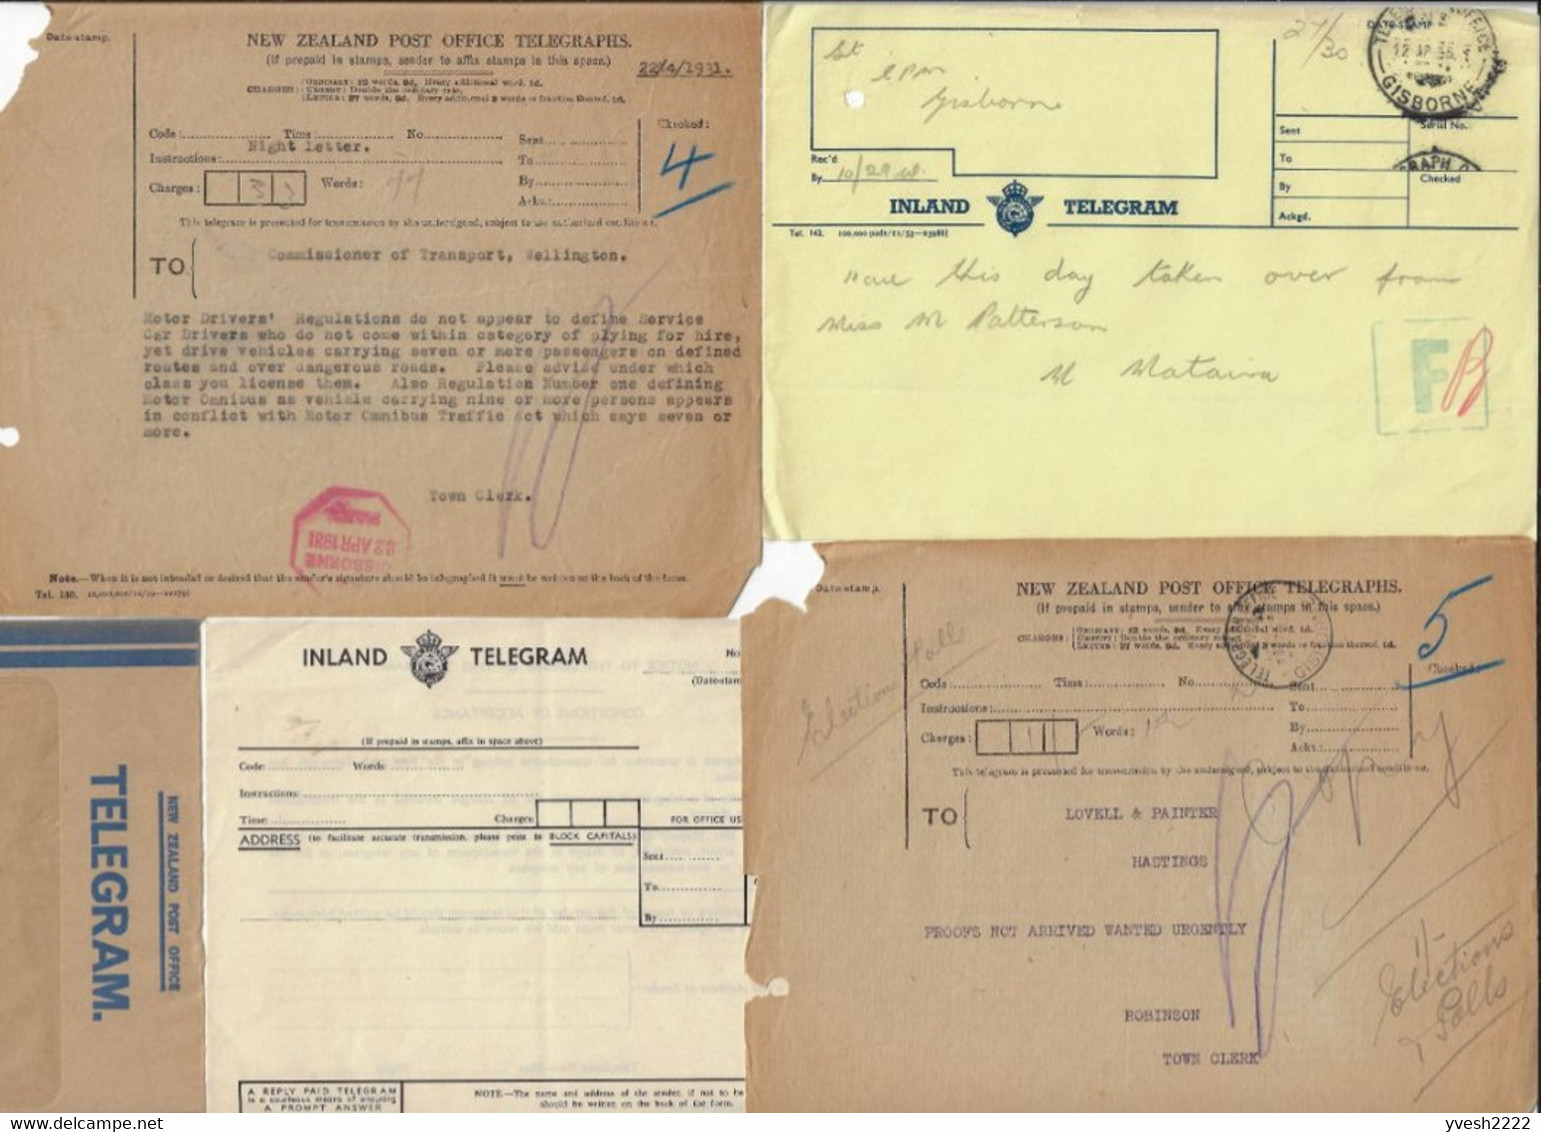 Nouvelle Zélande. Lot de télégrammes, d'enveloppes de télégrammes et formulaires utilisés par les télégraphes